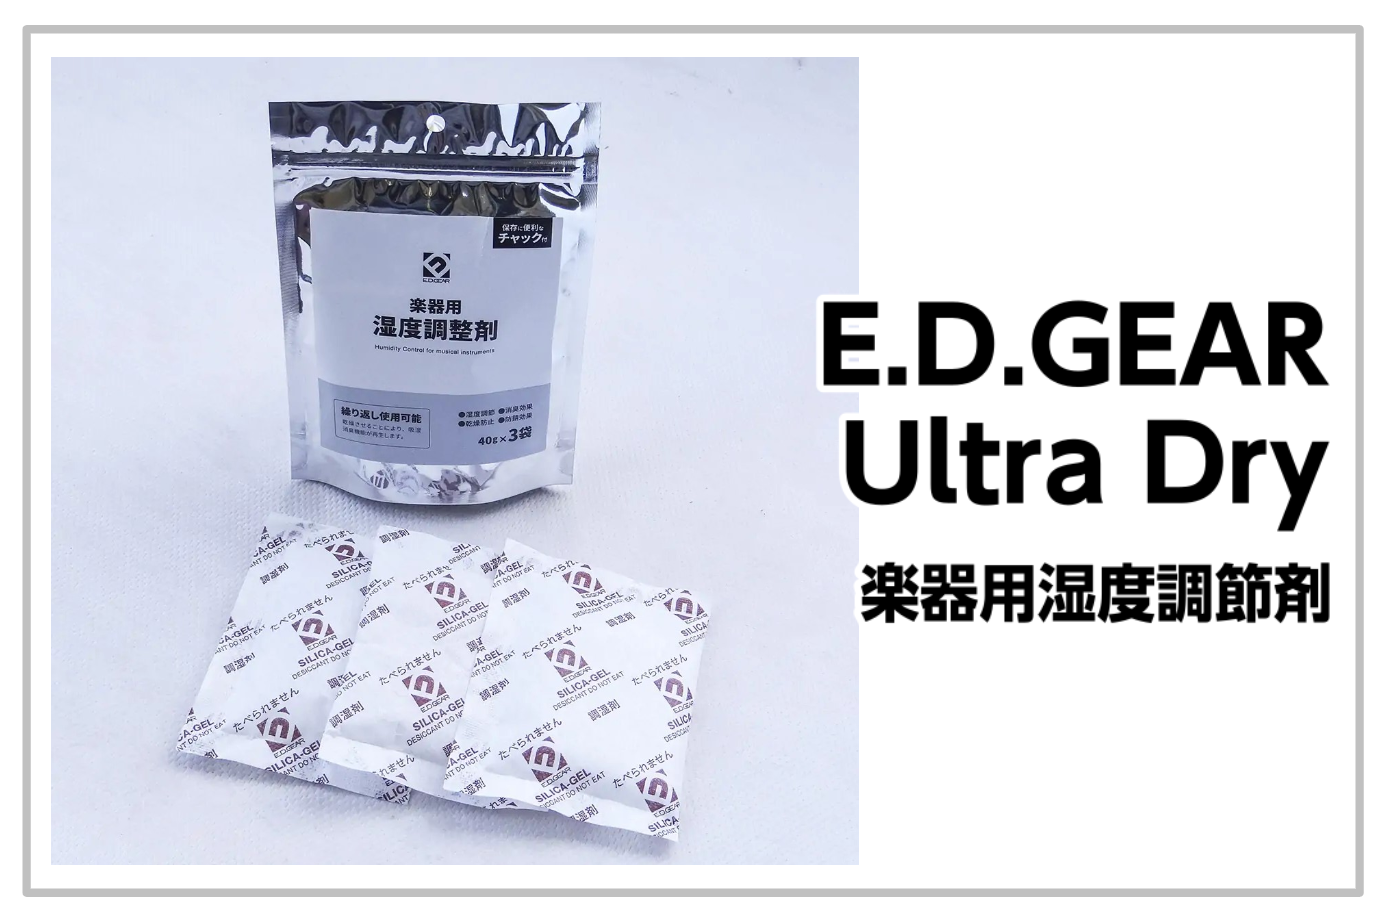 【新製品】E.D.GEAR 楽器用湿度調節剤“Ultra Dry”発売！